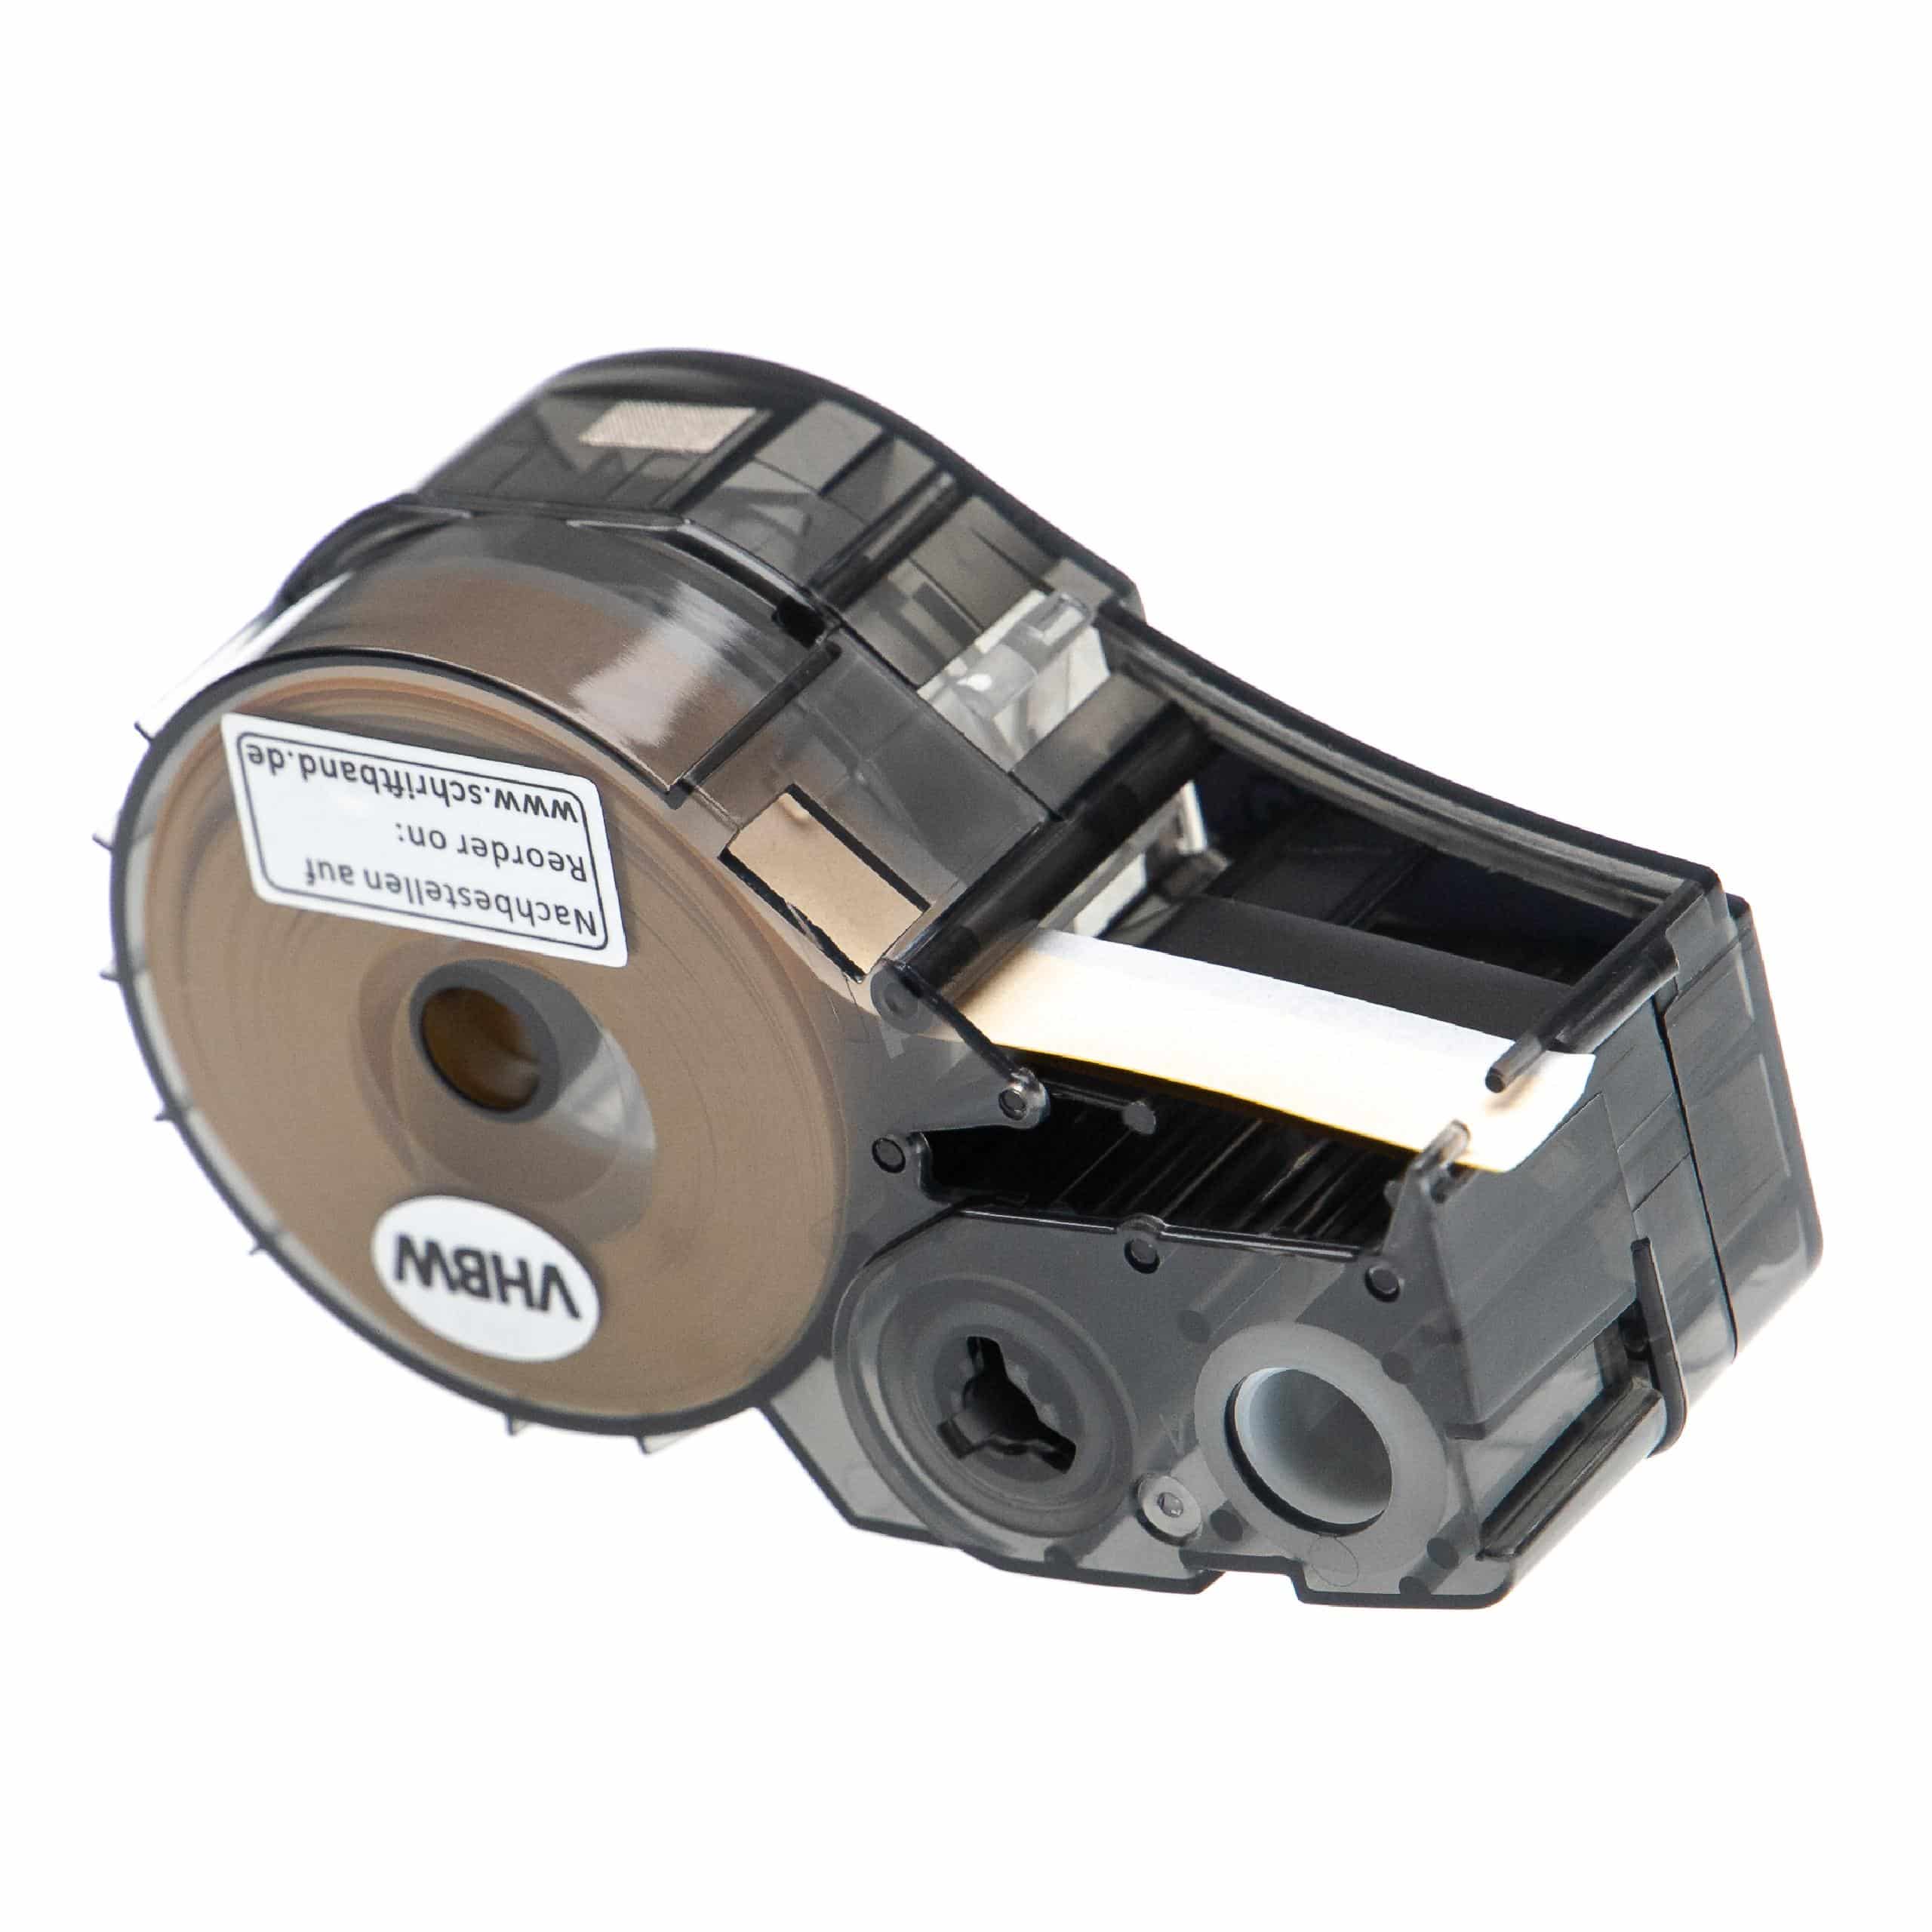 Cassetta nastro sostituisce Brady M21-375-595-YL per etichettatrice Brady 9,53mm nero su giallo, vinile